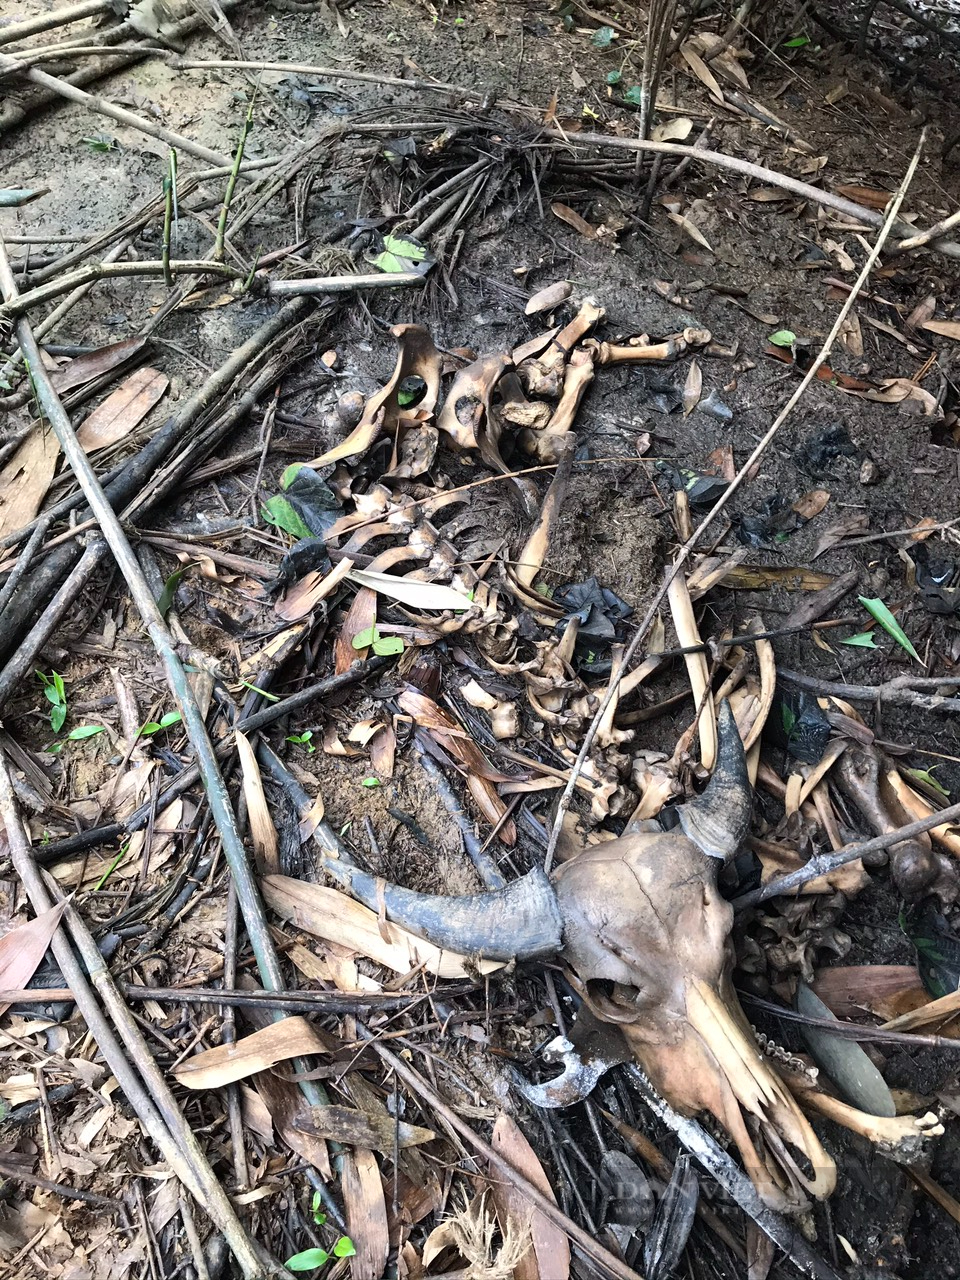 Chuyện lạ và buồn ở Hà Tĩnh: Đàn trâu nhà hàng trăm triệu đồng bị giết bởi bẫy thú trong rừng bảo tồn - Ảnh 2.